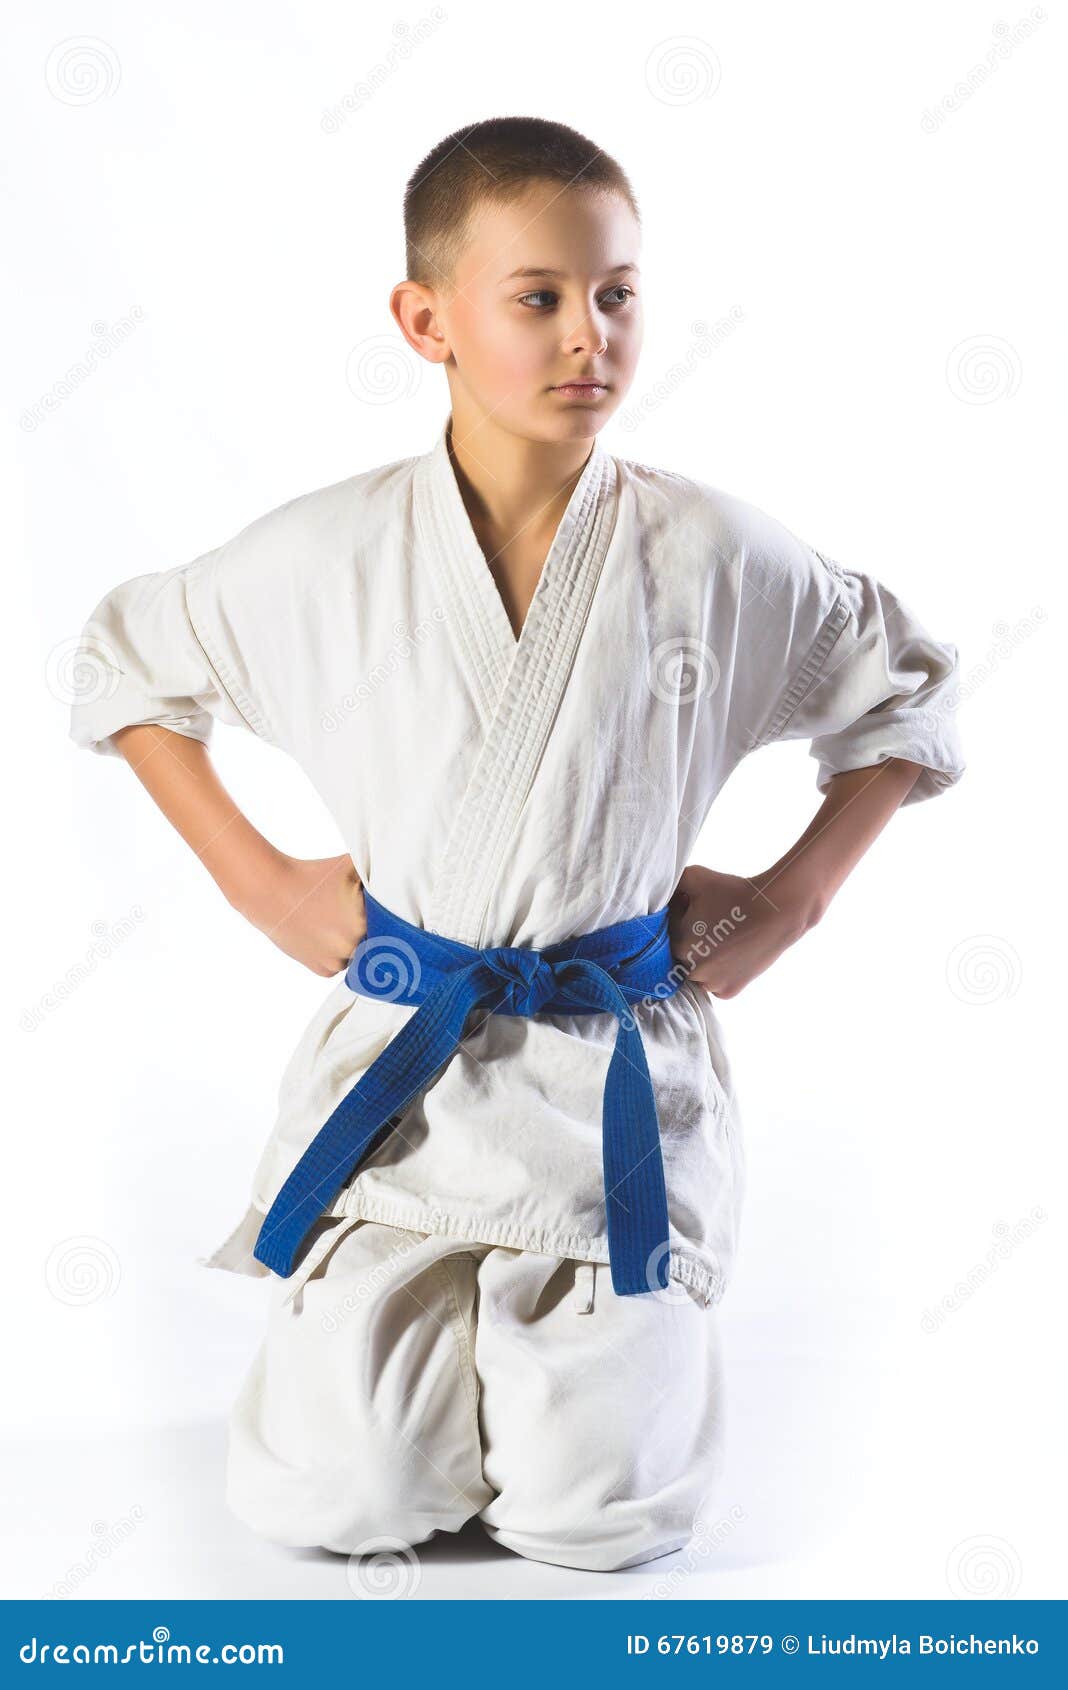 Я спешу на тренировку в кимоно сражаюсь. Мальчик в кимоно. Мальчик в белом кимоно. Мальчик в кимоно фотосессия. Мальчик каратист в кимоно.